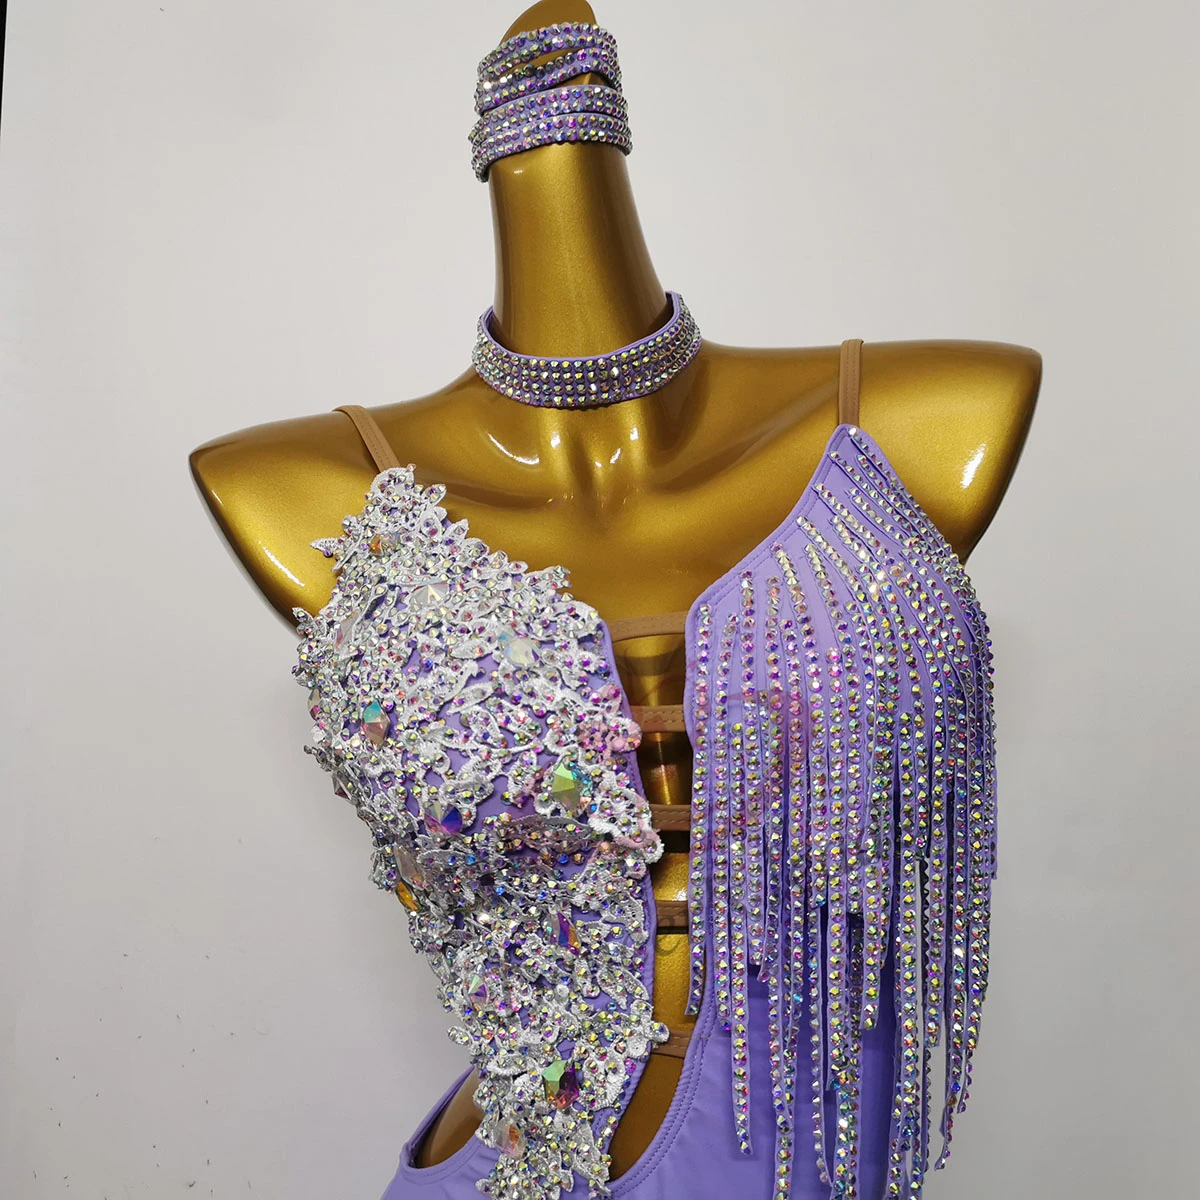 

Стандартная одежда для латиноамериканских танцев, Высококачественная индивидуальная пушистая Юбка со сверкающими бриллиантами на подоле самбы, платье для танцев румбы